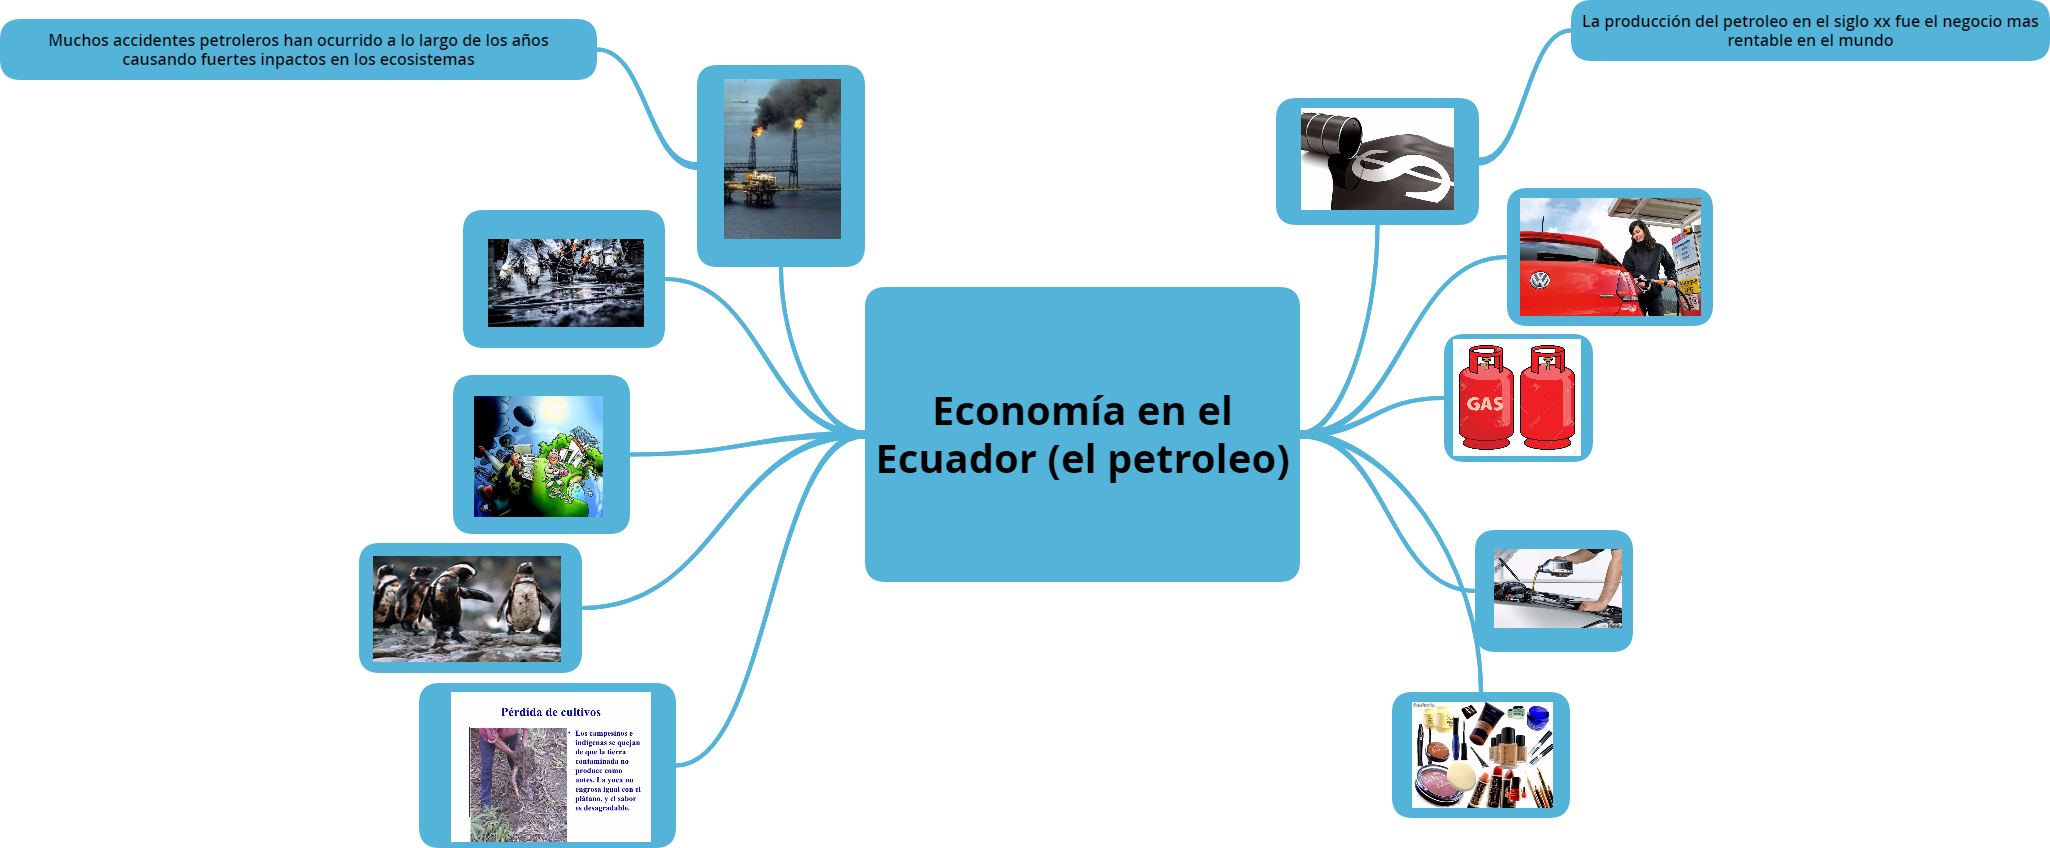 Annexe Economía en el Ecuador (el petroleo).png